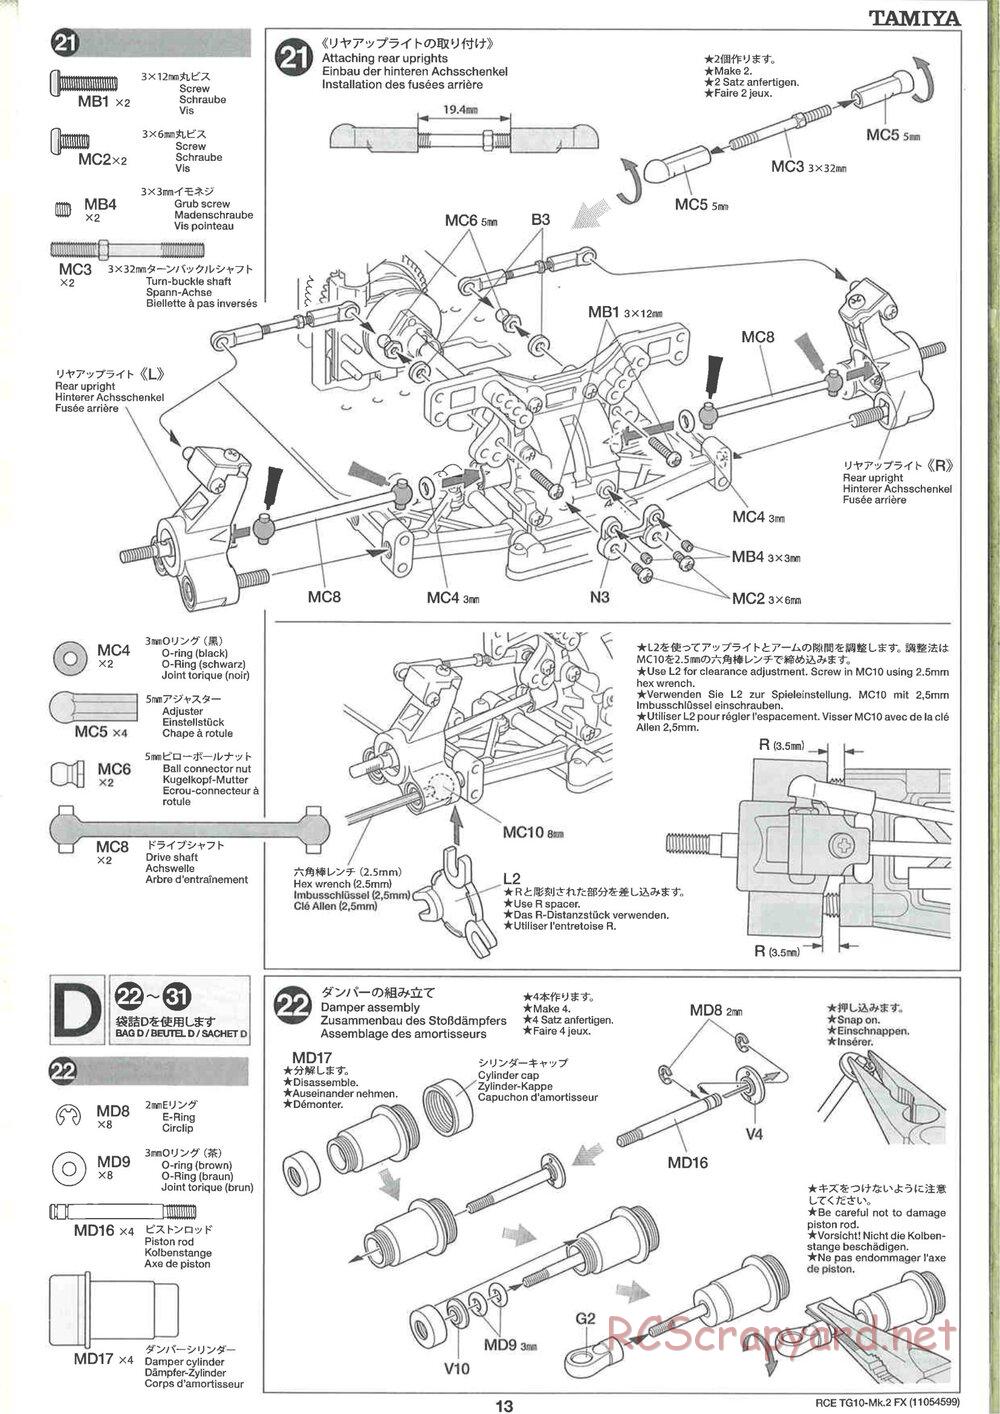 Tamiya - TG10 Mk.2 FX Chassis - Manual - Page 13